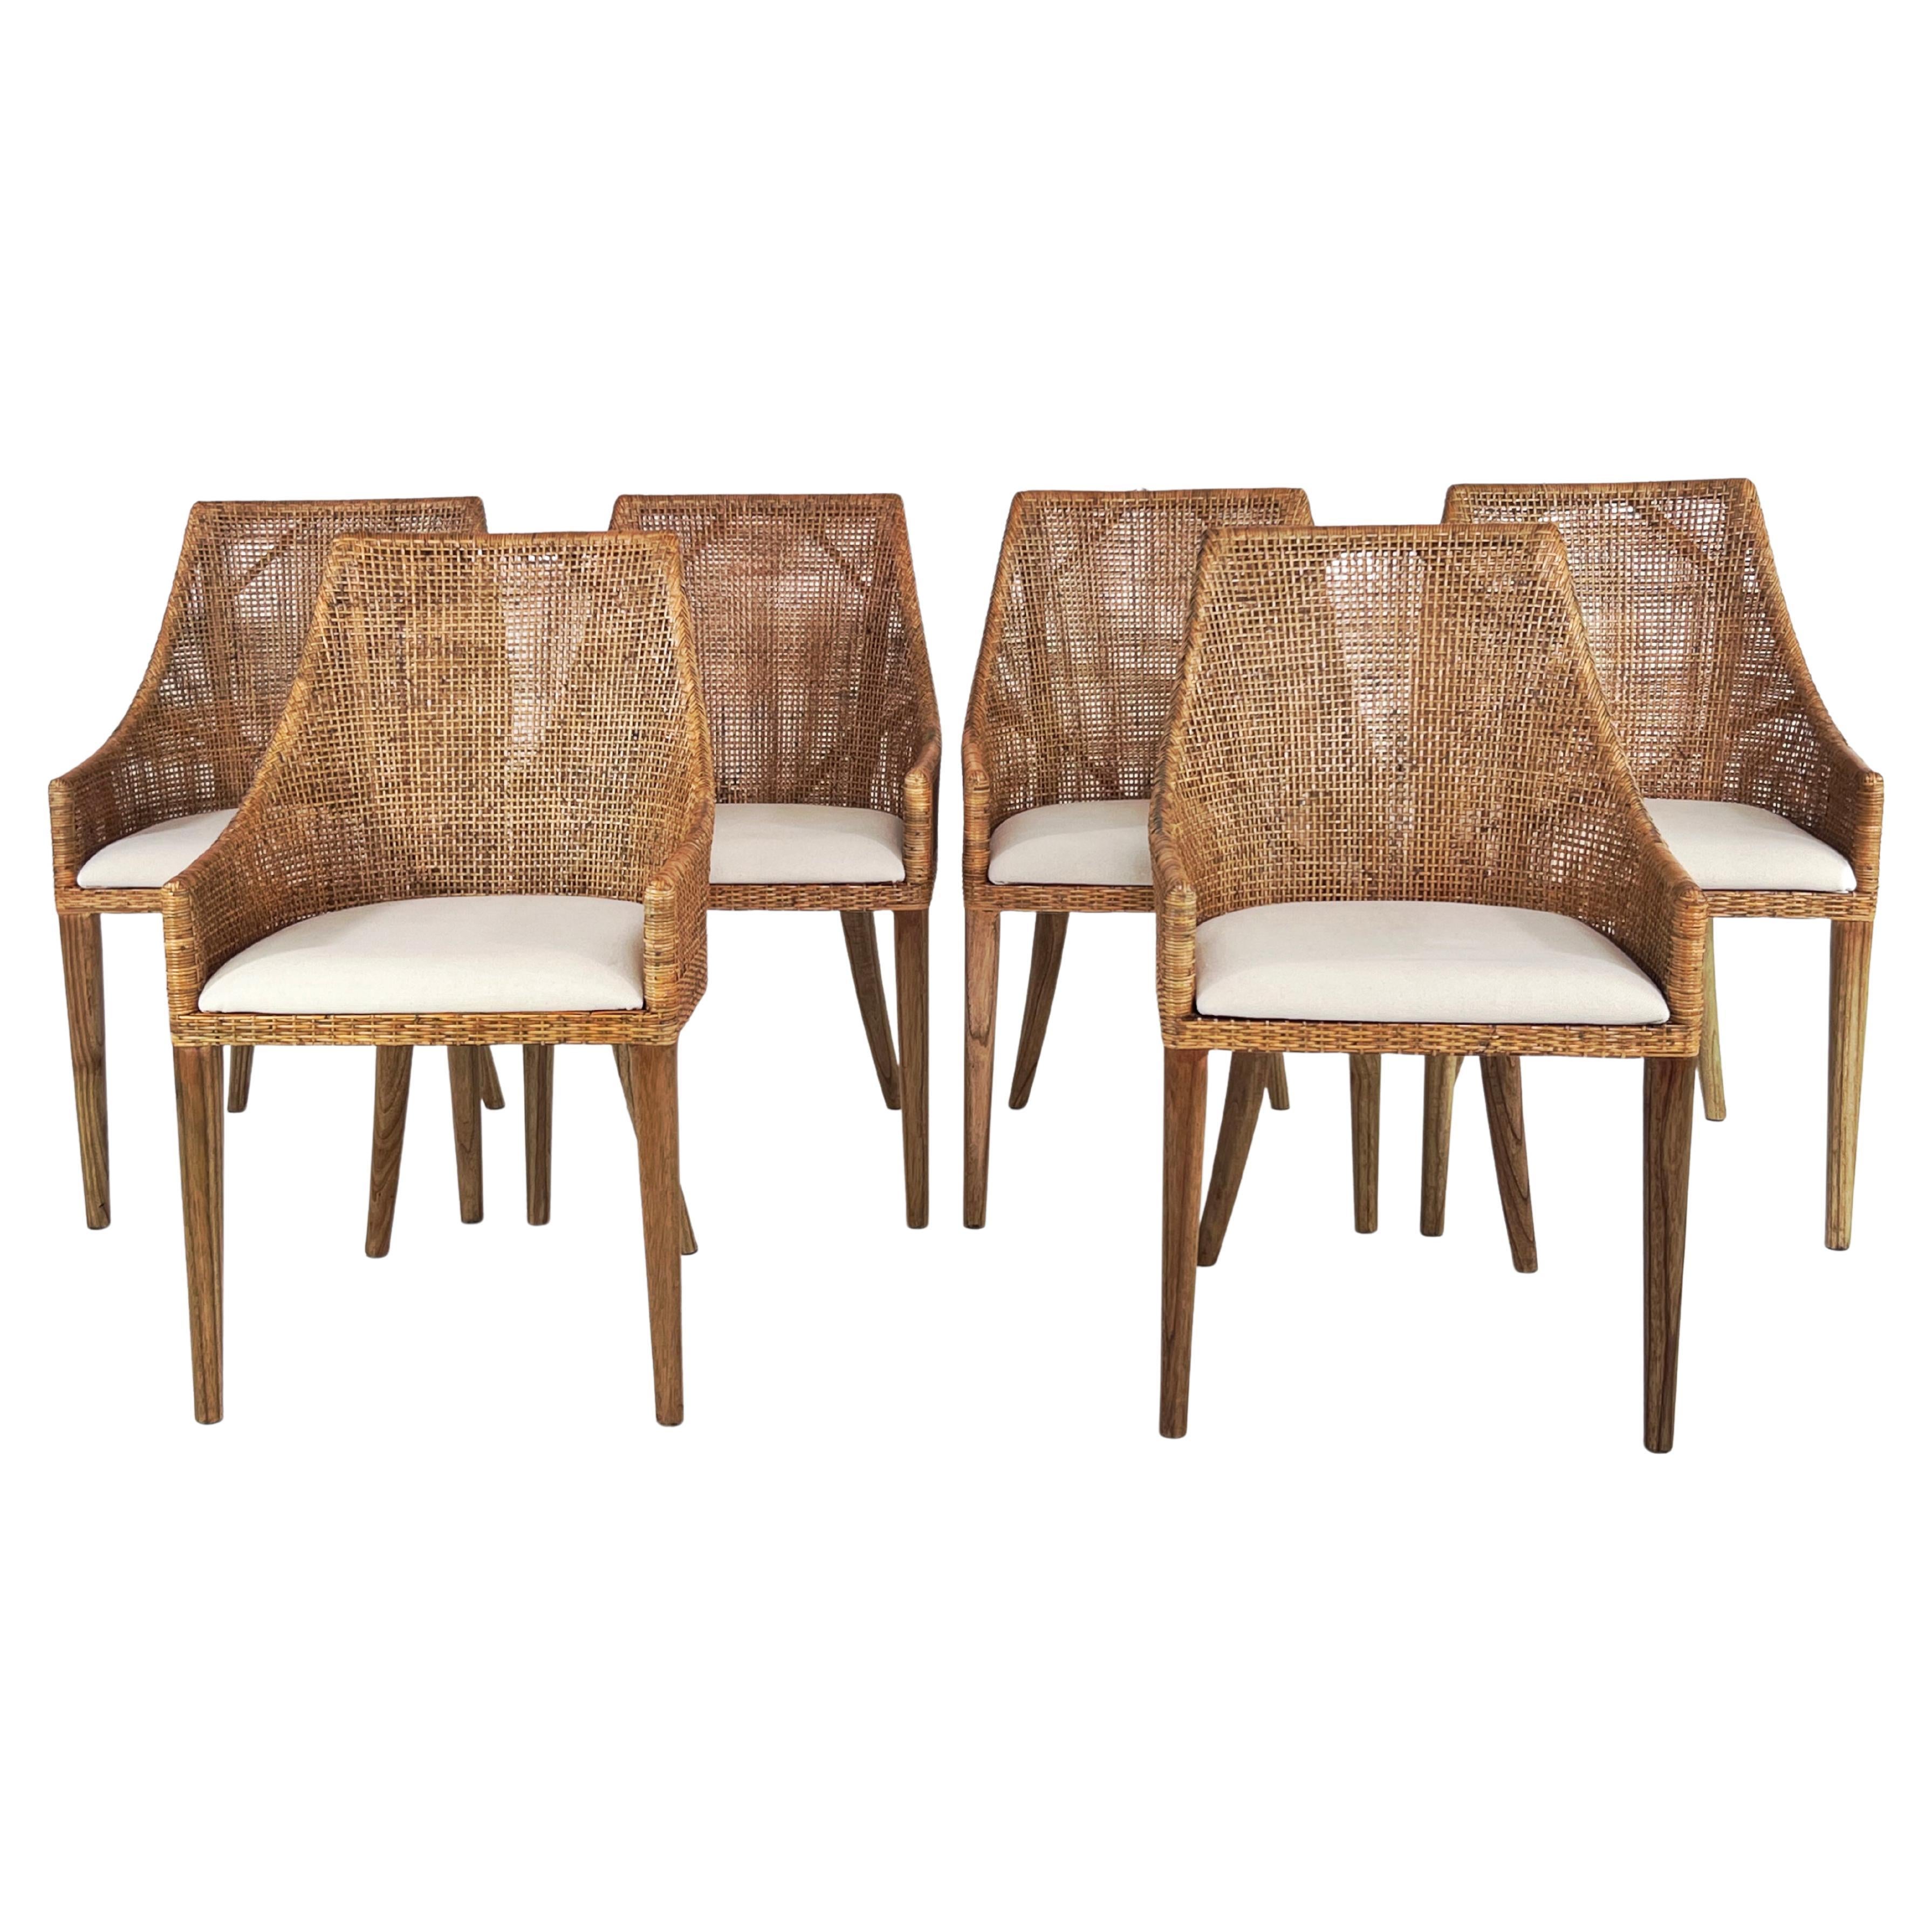 Set aus sechs Sesseln aus Rattan und Holz, französisches Design